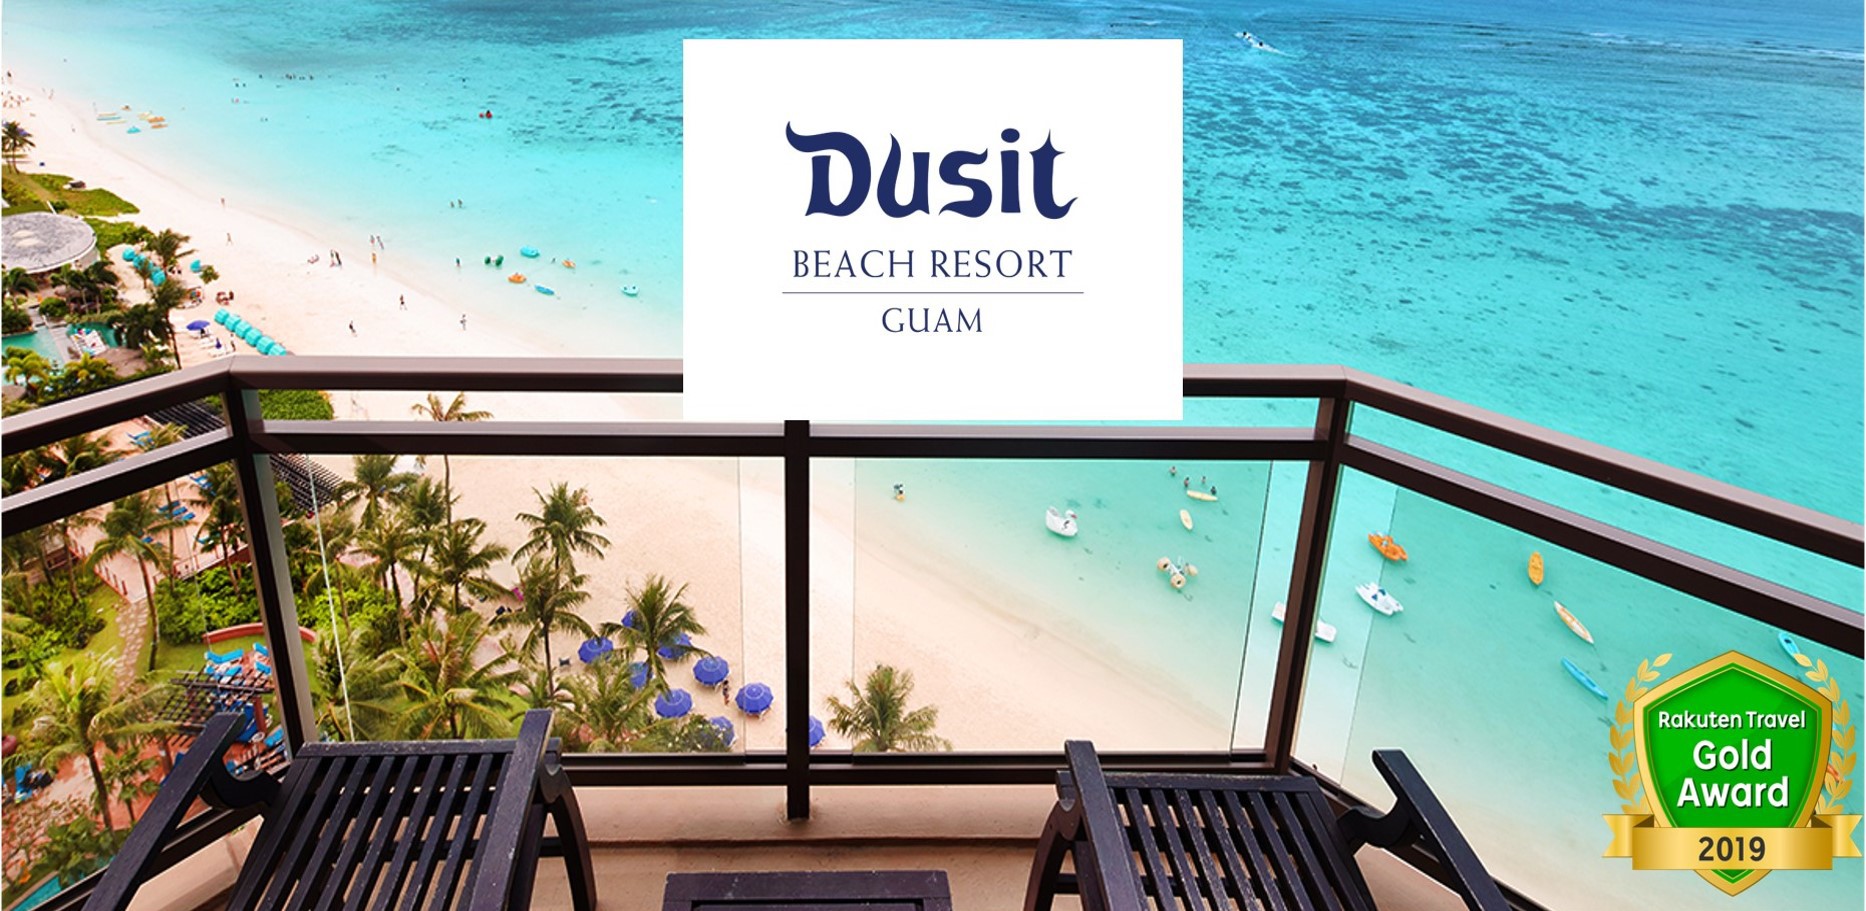 デュシット ビーチリゾートグアム 旧アウトリガー グアム ビーチ リゾート Dusit Beach Resort Guam 宿泊予約 楽天トラベル